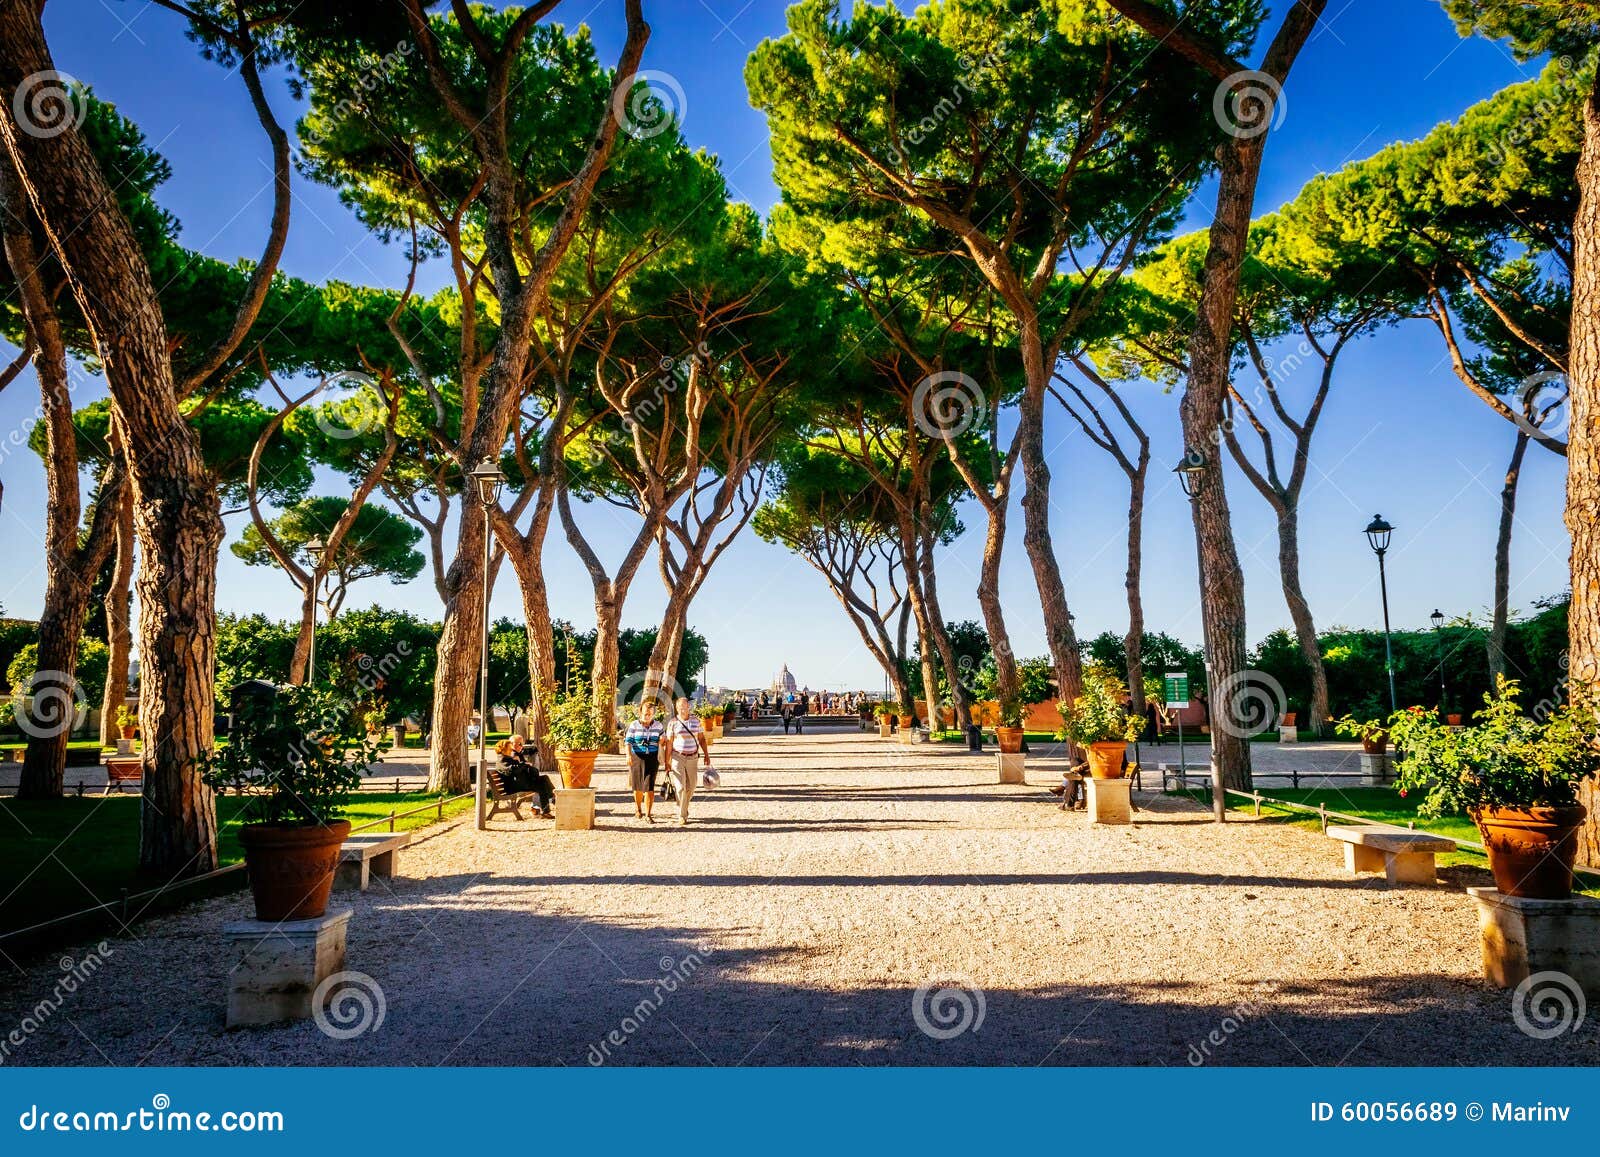 ROME ITALIEN - OKTOBER 30: Apelsinträdgård, Giardino degli Aranci, i Rome, Italien på Oktober 30, 2014